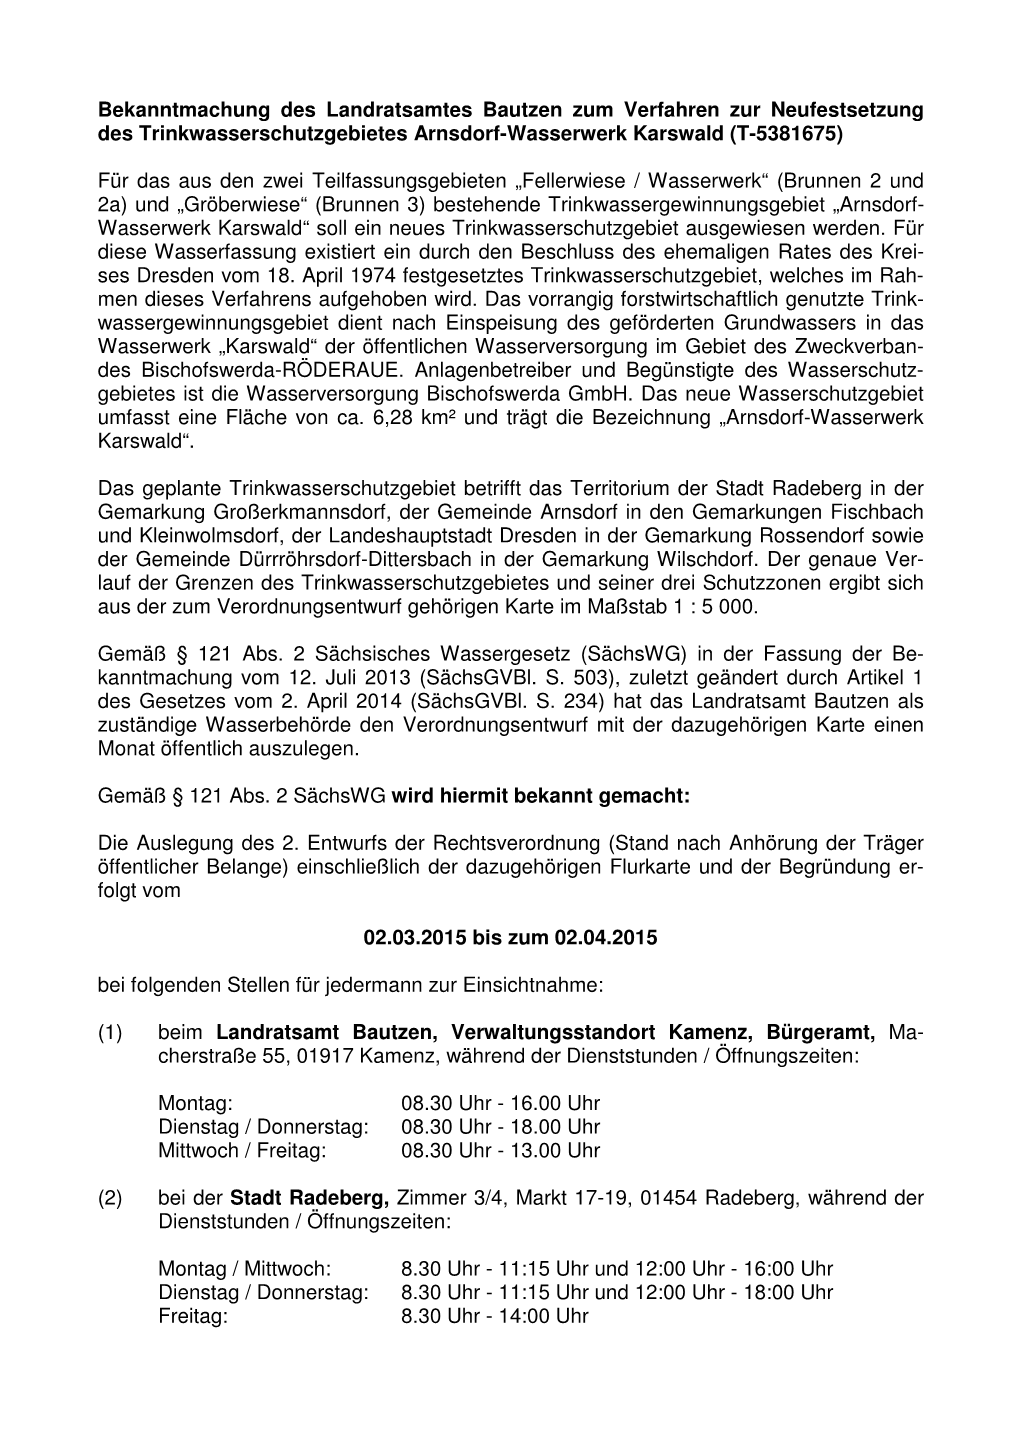 Bekanntmachung Des Landratsamtes Bautzen Zum Verfahren Zur Neufestsetzung Des Trinkwasserschutzgebietes Arnsdorf-Wasserwerk Karswald (T-5381675)